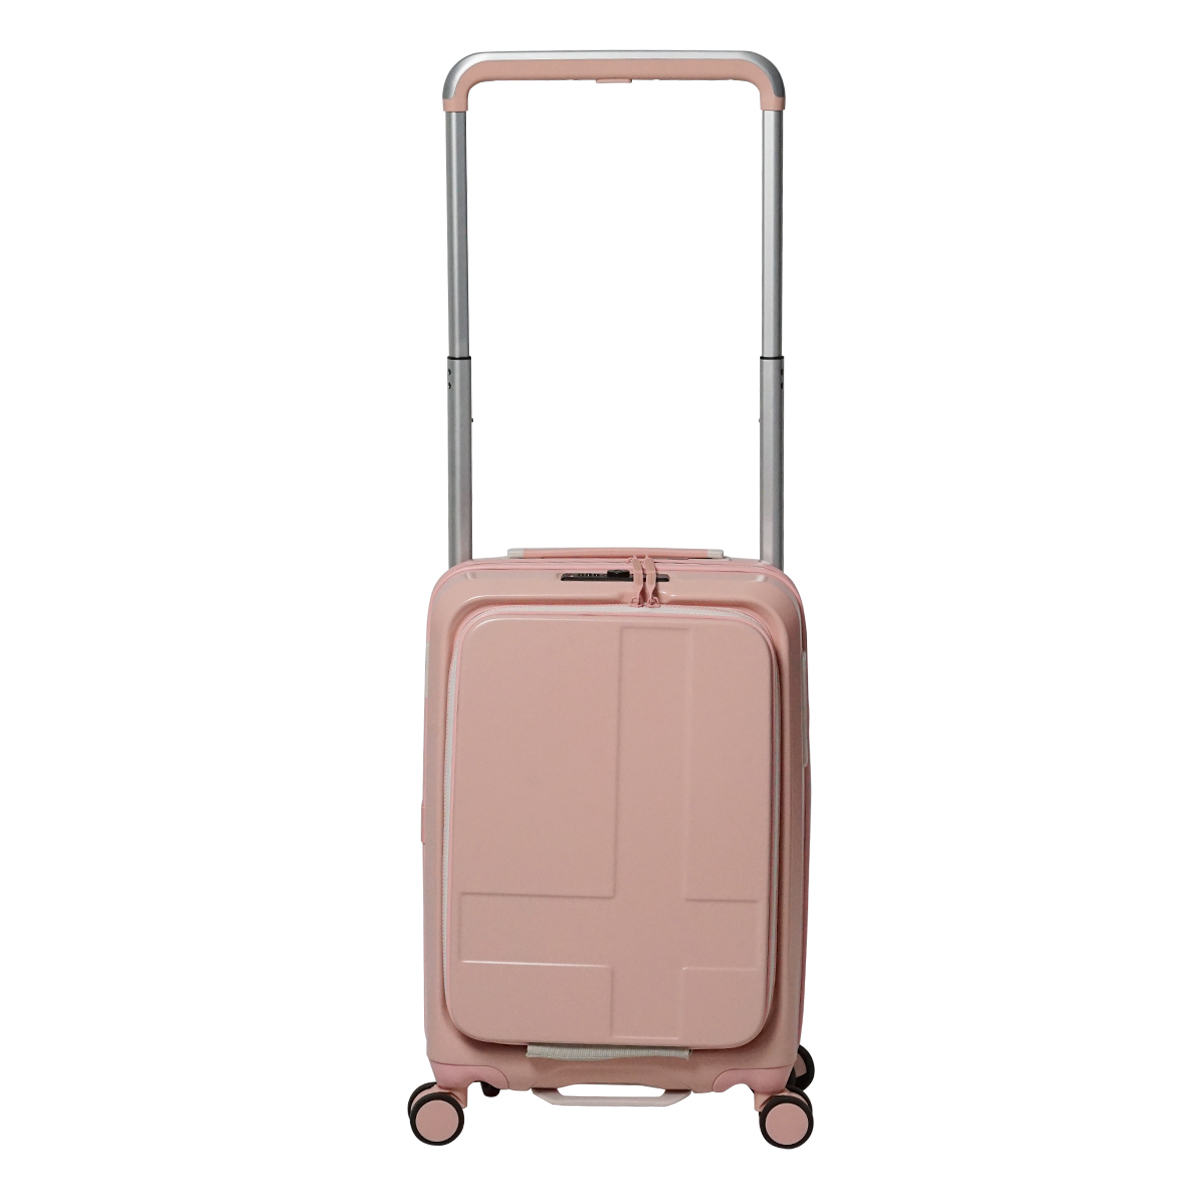 イノベーター スーツケース Wide Carry INV111 軽量 38L 54cm 3.4kg innovator キャリーケース キャリーバッグ  TSAロック搭載 2年保証